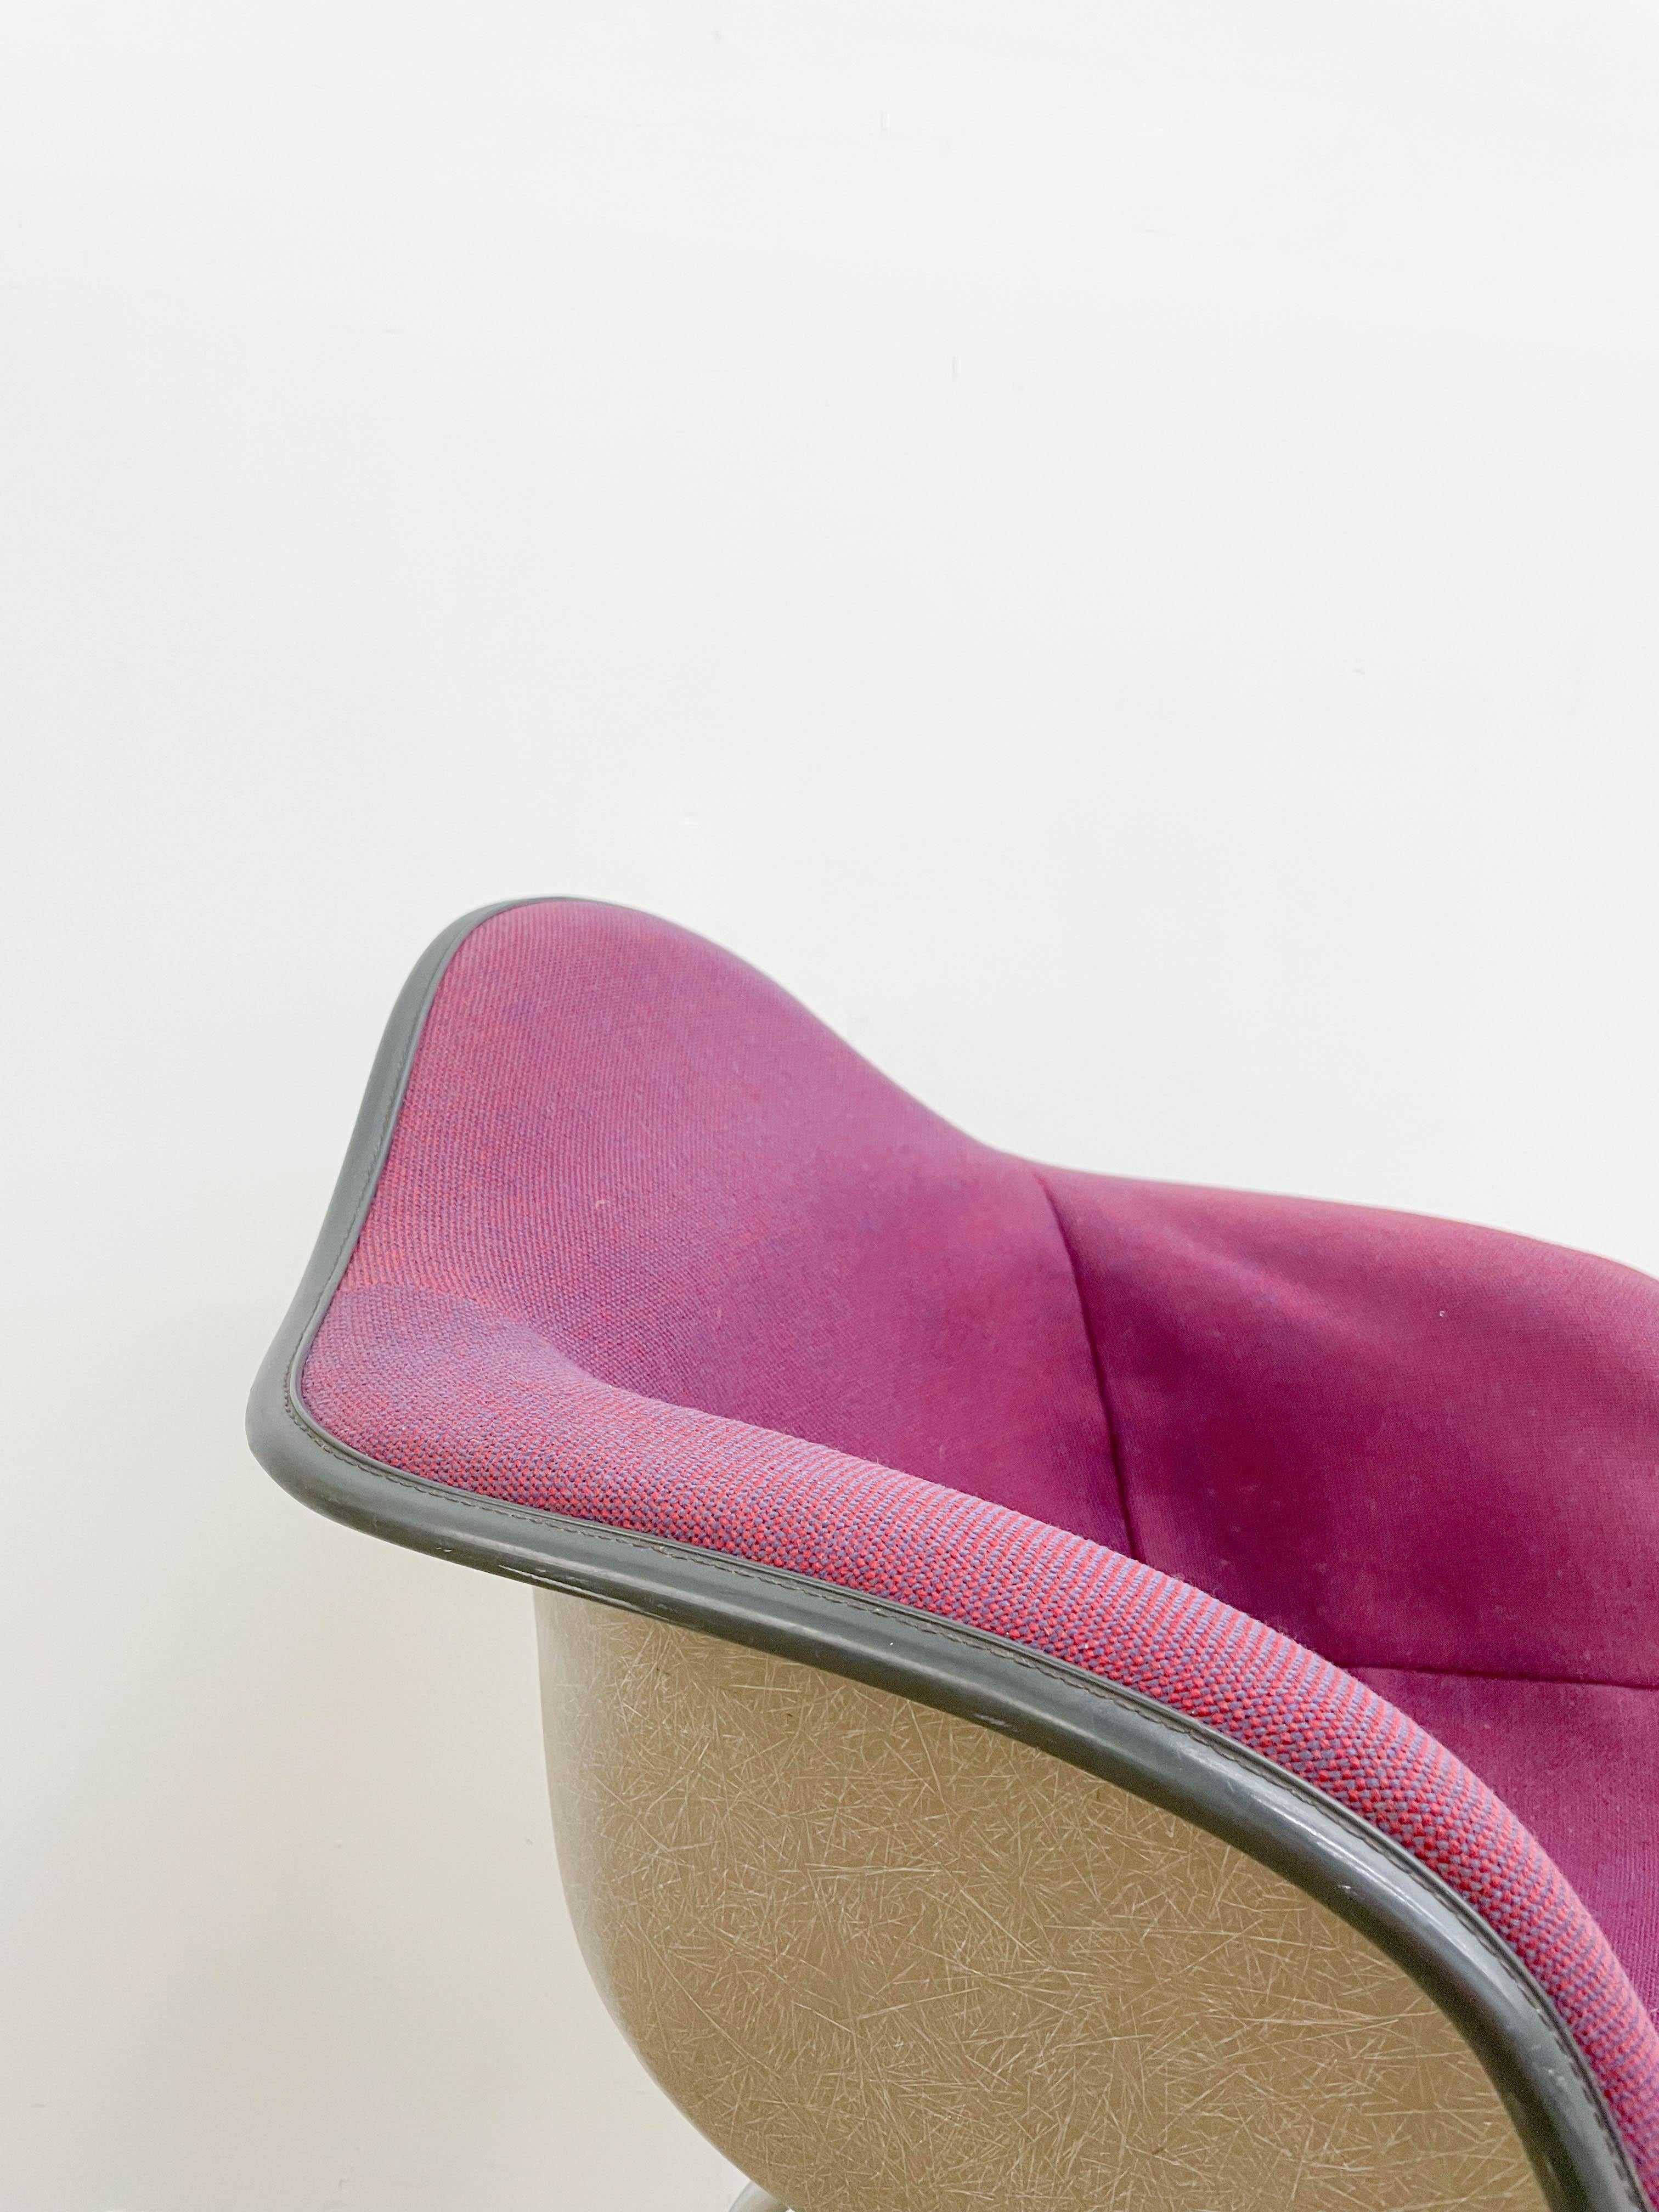 Fauteuil iconique des Eames en fibre de verre recouvert de tissu Alexander Girard sur une base plaquée zinc. La chaise est dotée d'une nouvelle mousse qui la rend très confortable. Le revêtement en tissu présente quelques zones décollées vers le bas